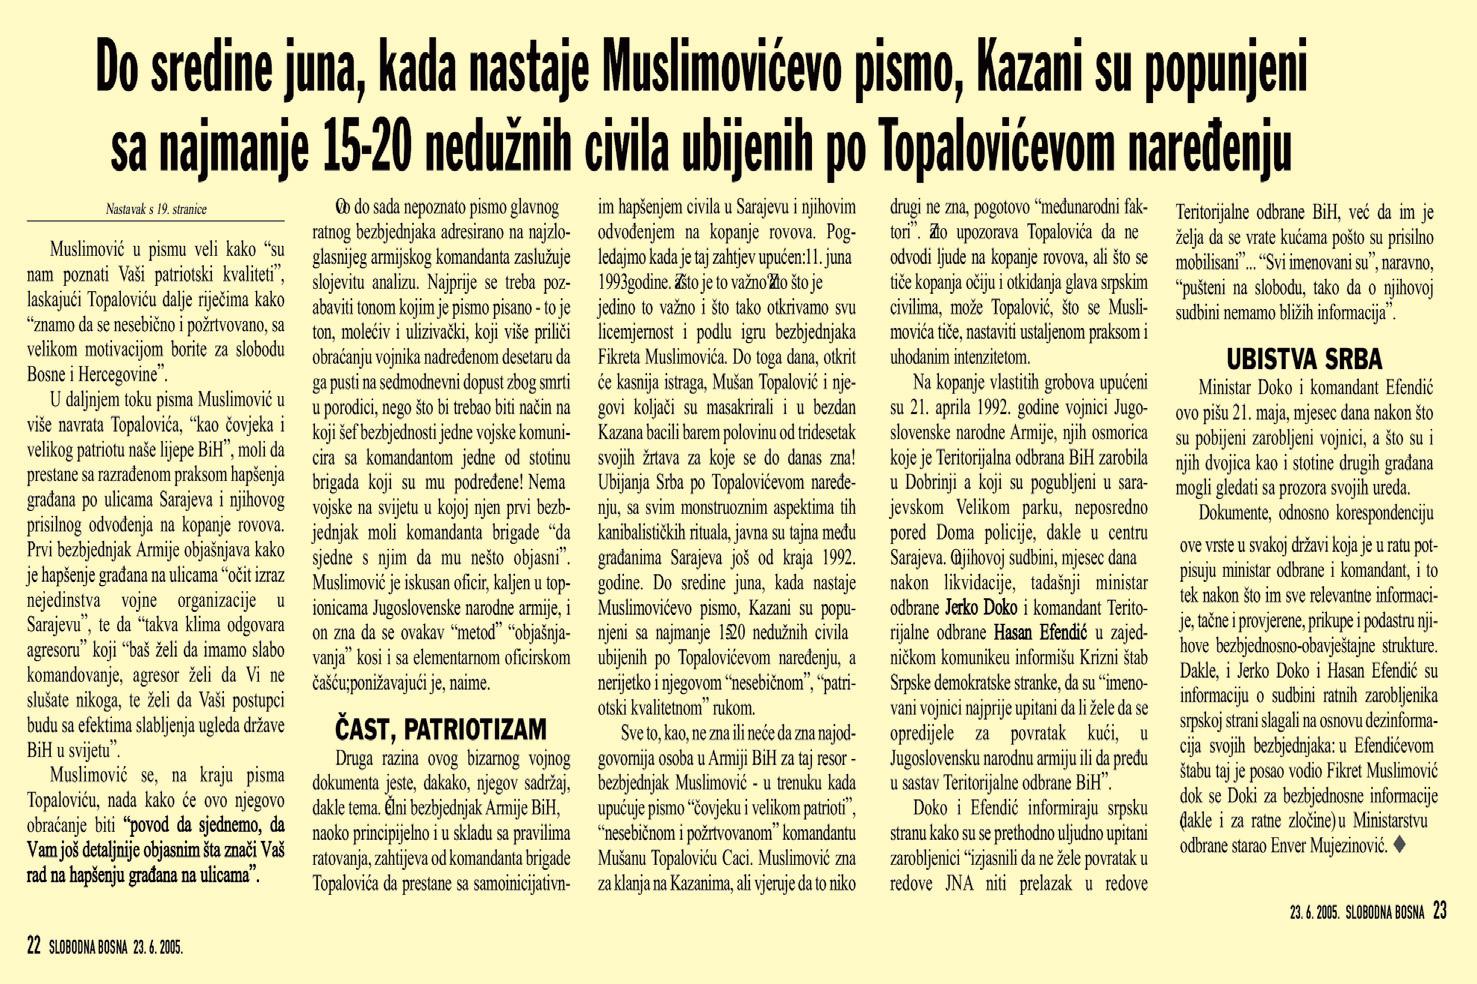 Faksimil teksta u kojem se Avdić posebno pozabavio sadržajem pisma koje je Muslimović poslao 11. juna 1993. godine Topaloviću - Avaz